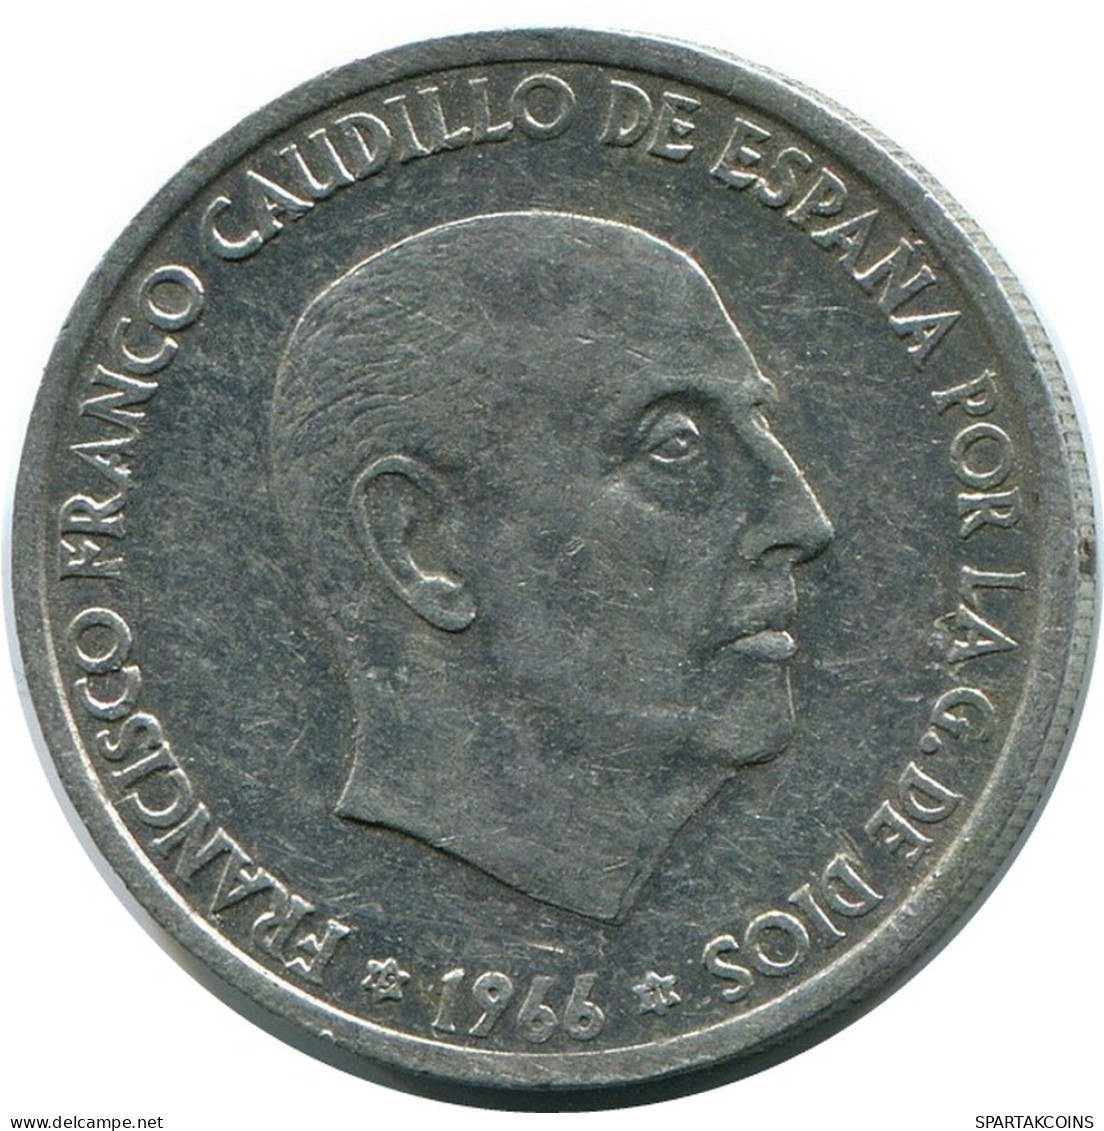 50 CENTIMOS 1966 SPAIN Coin #AR162.U - 50 Céntimos